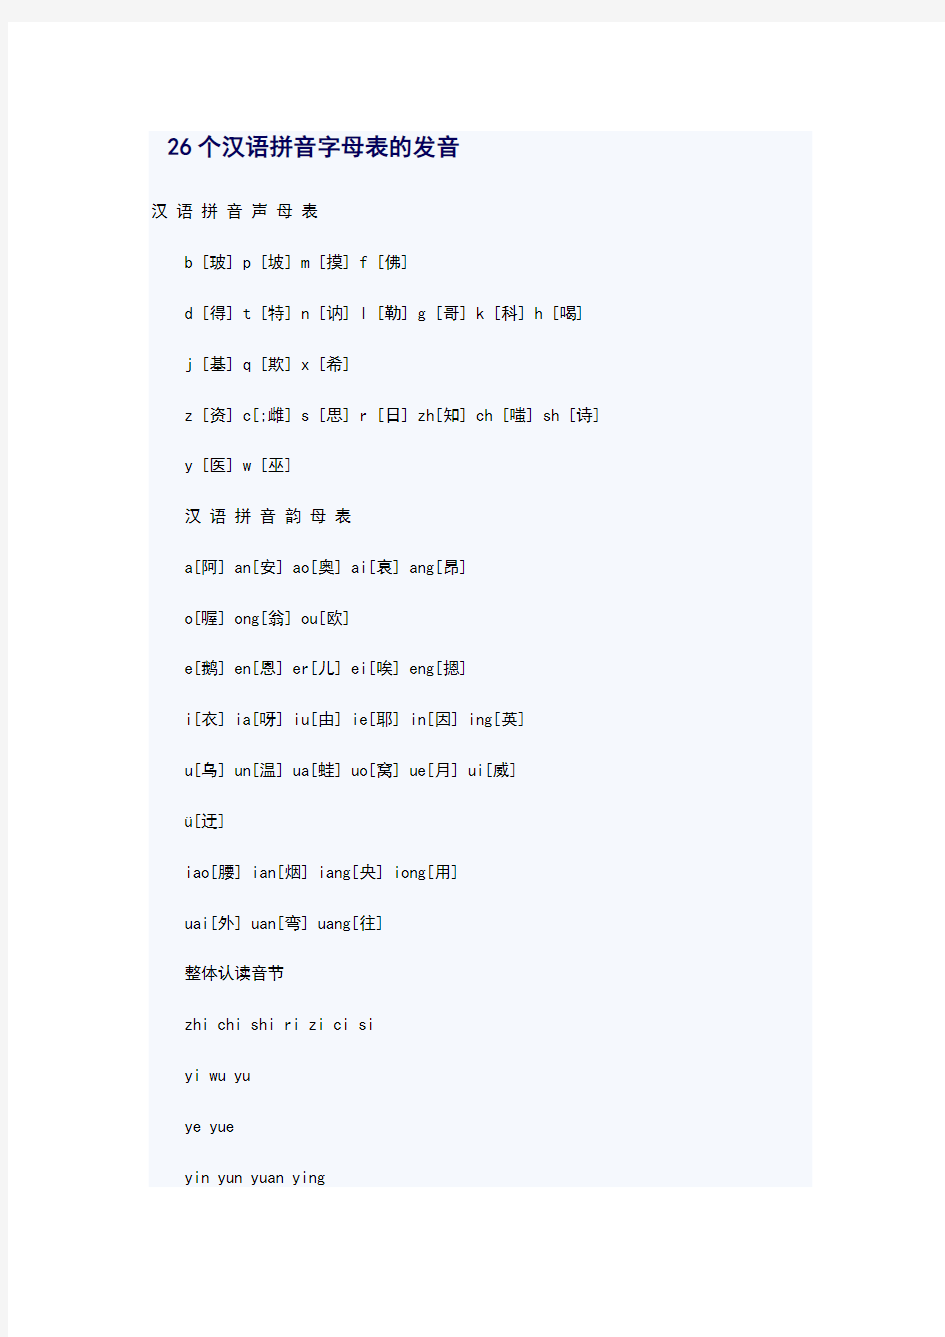 26个汉语拼音字母表地发音